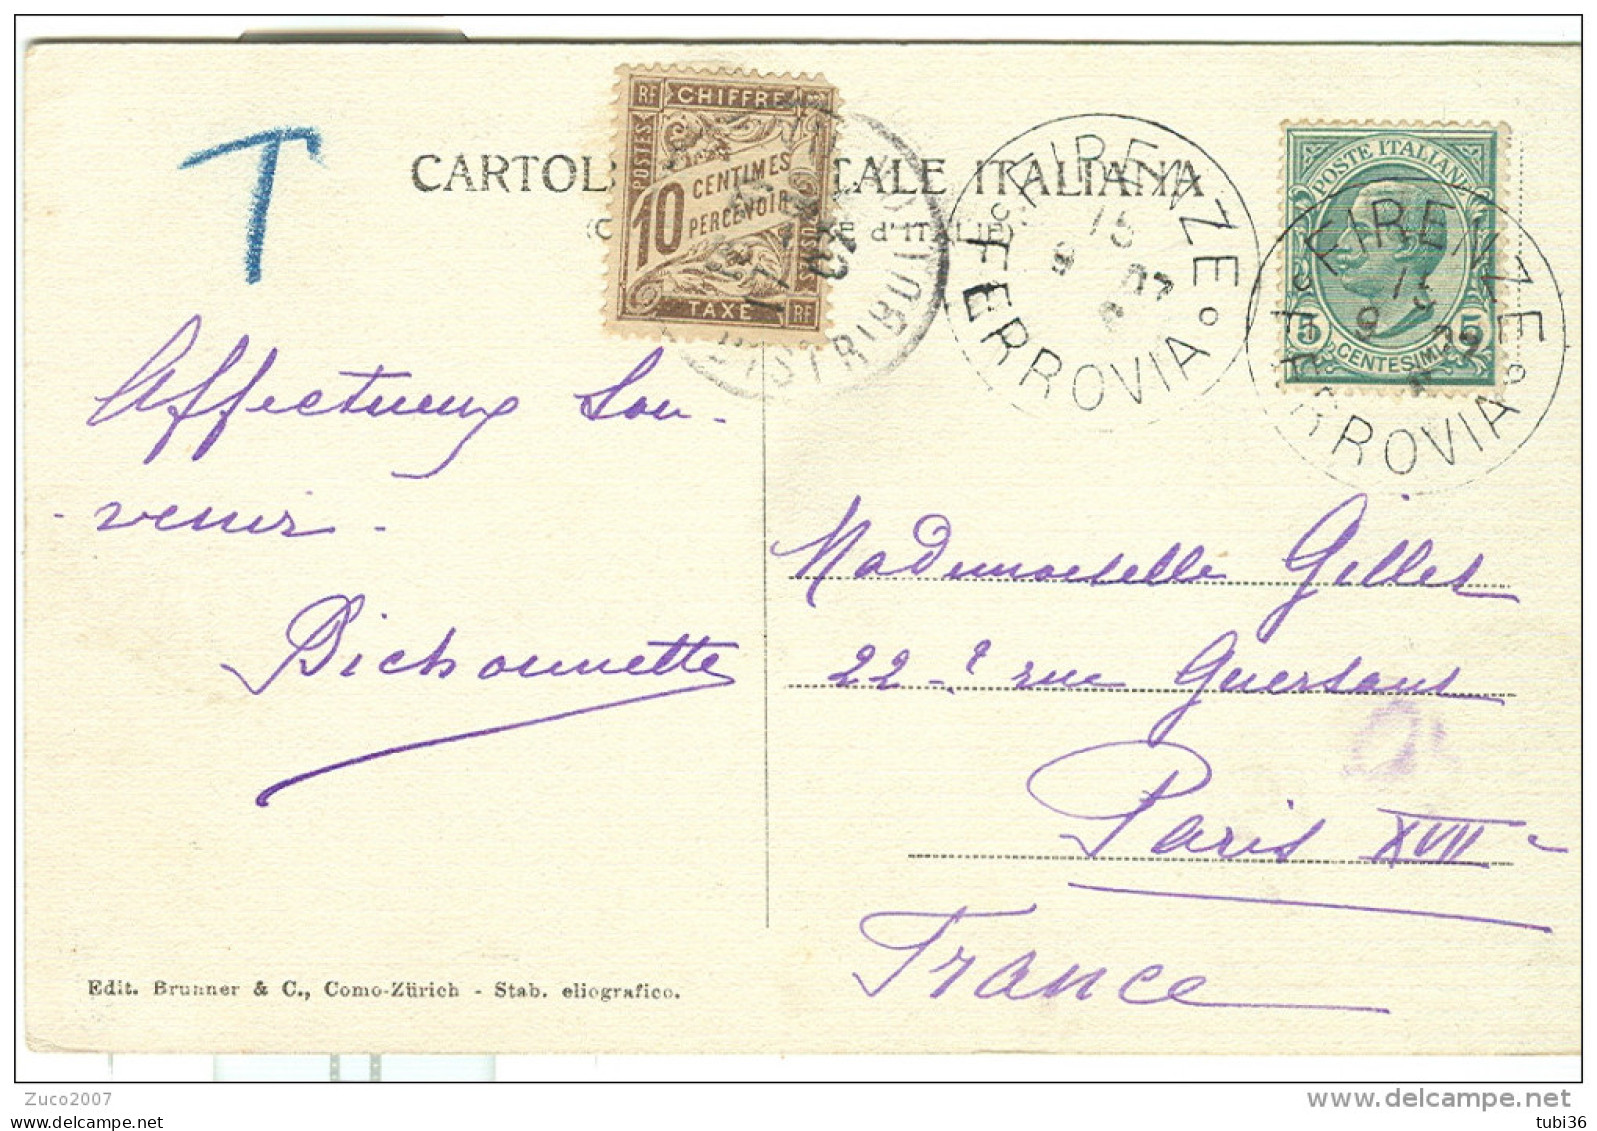 LEONI Cent.5 SU CARTOLINA B/N VIAGGIATA  1907, FIRENZE-PARIGI, TASSATA FRANCIA Cent.10,FIRENZE BATTISTERO - Portomarken